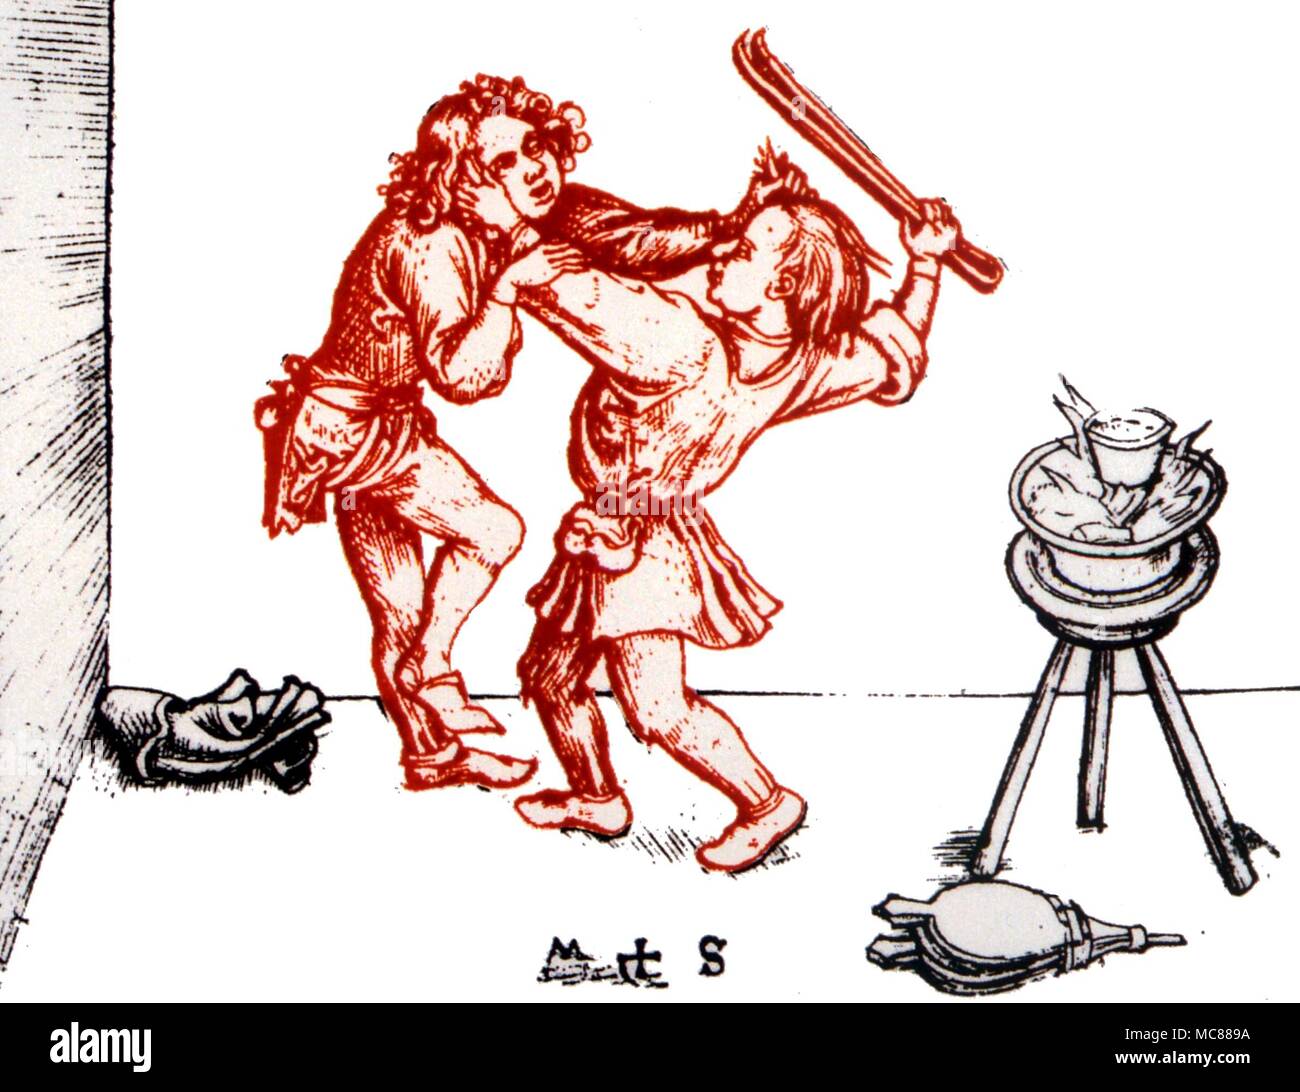 ELEMENTALS - Temperamente zwei cholerics kämpfen - Ausdruck des Feuer Temperament. Nach dem Drucken von Martin Schonegauer (Ende 15. Jahrhundert) Stockfoto